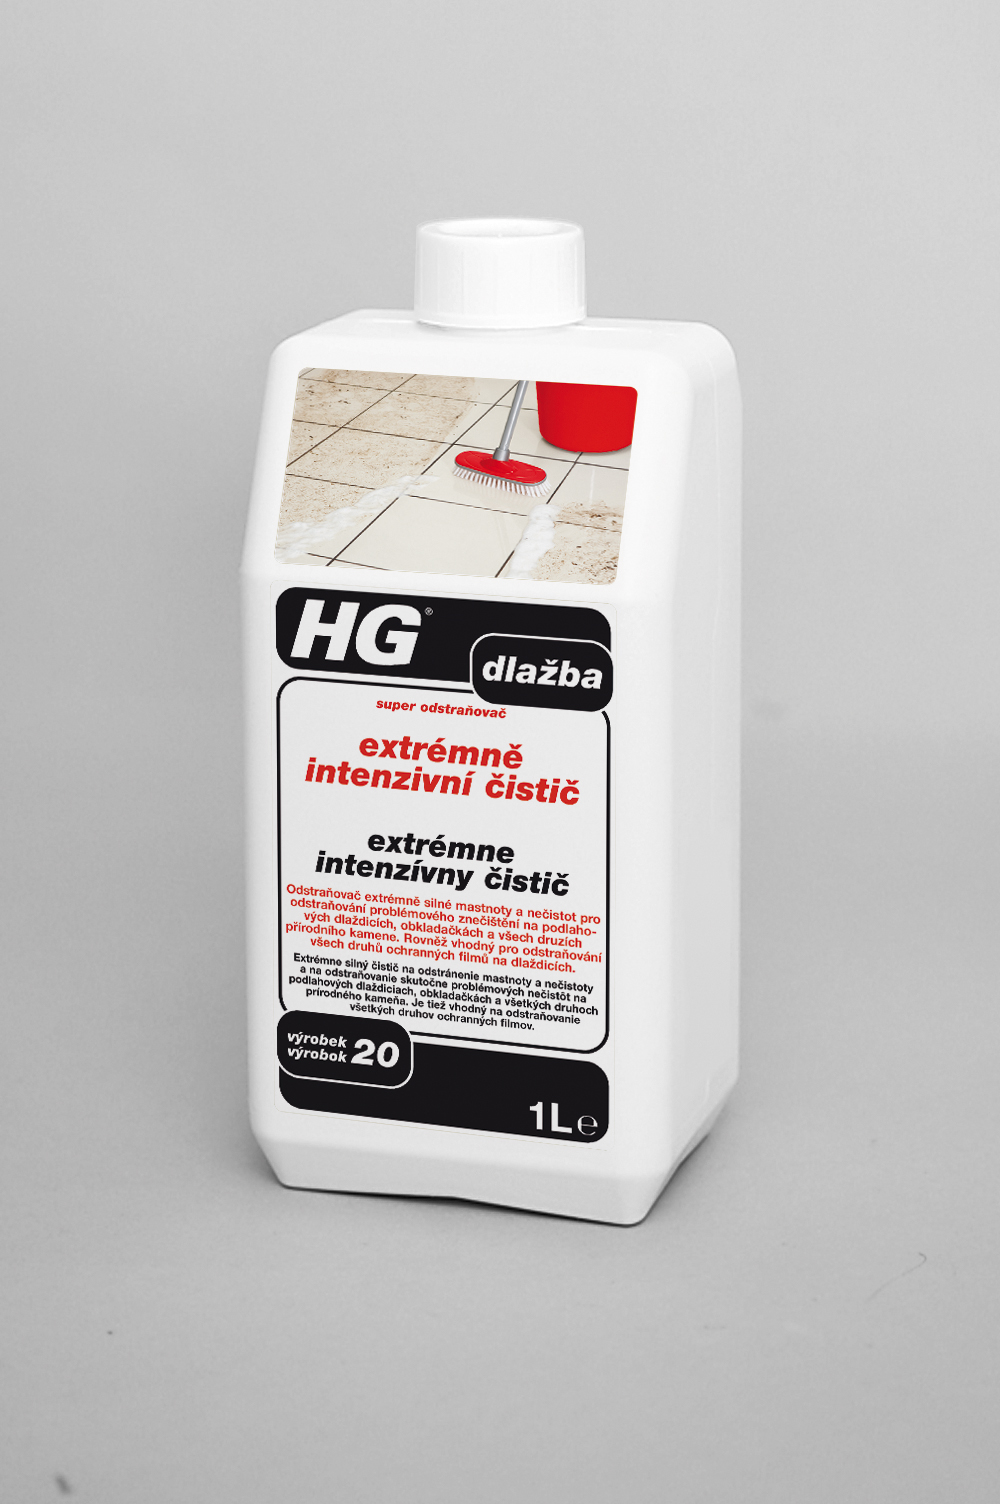 HG extrémně intenzivní čistič na dlažbu